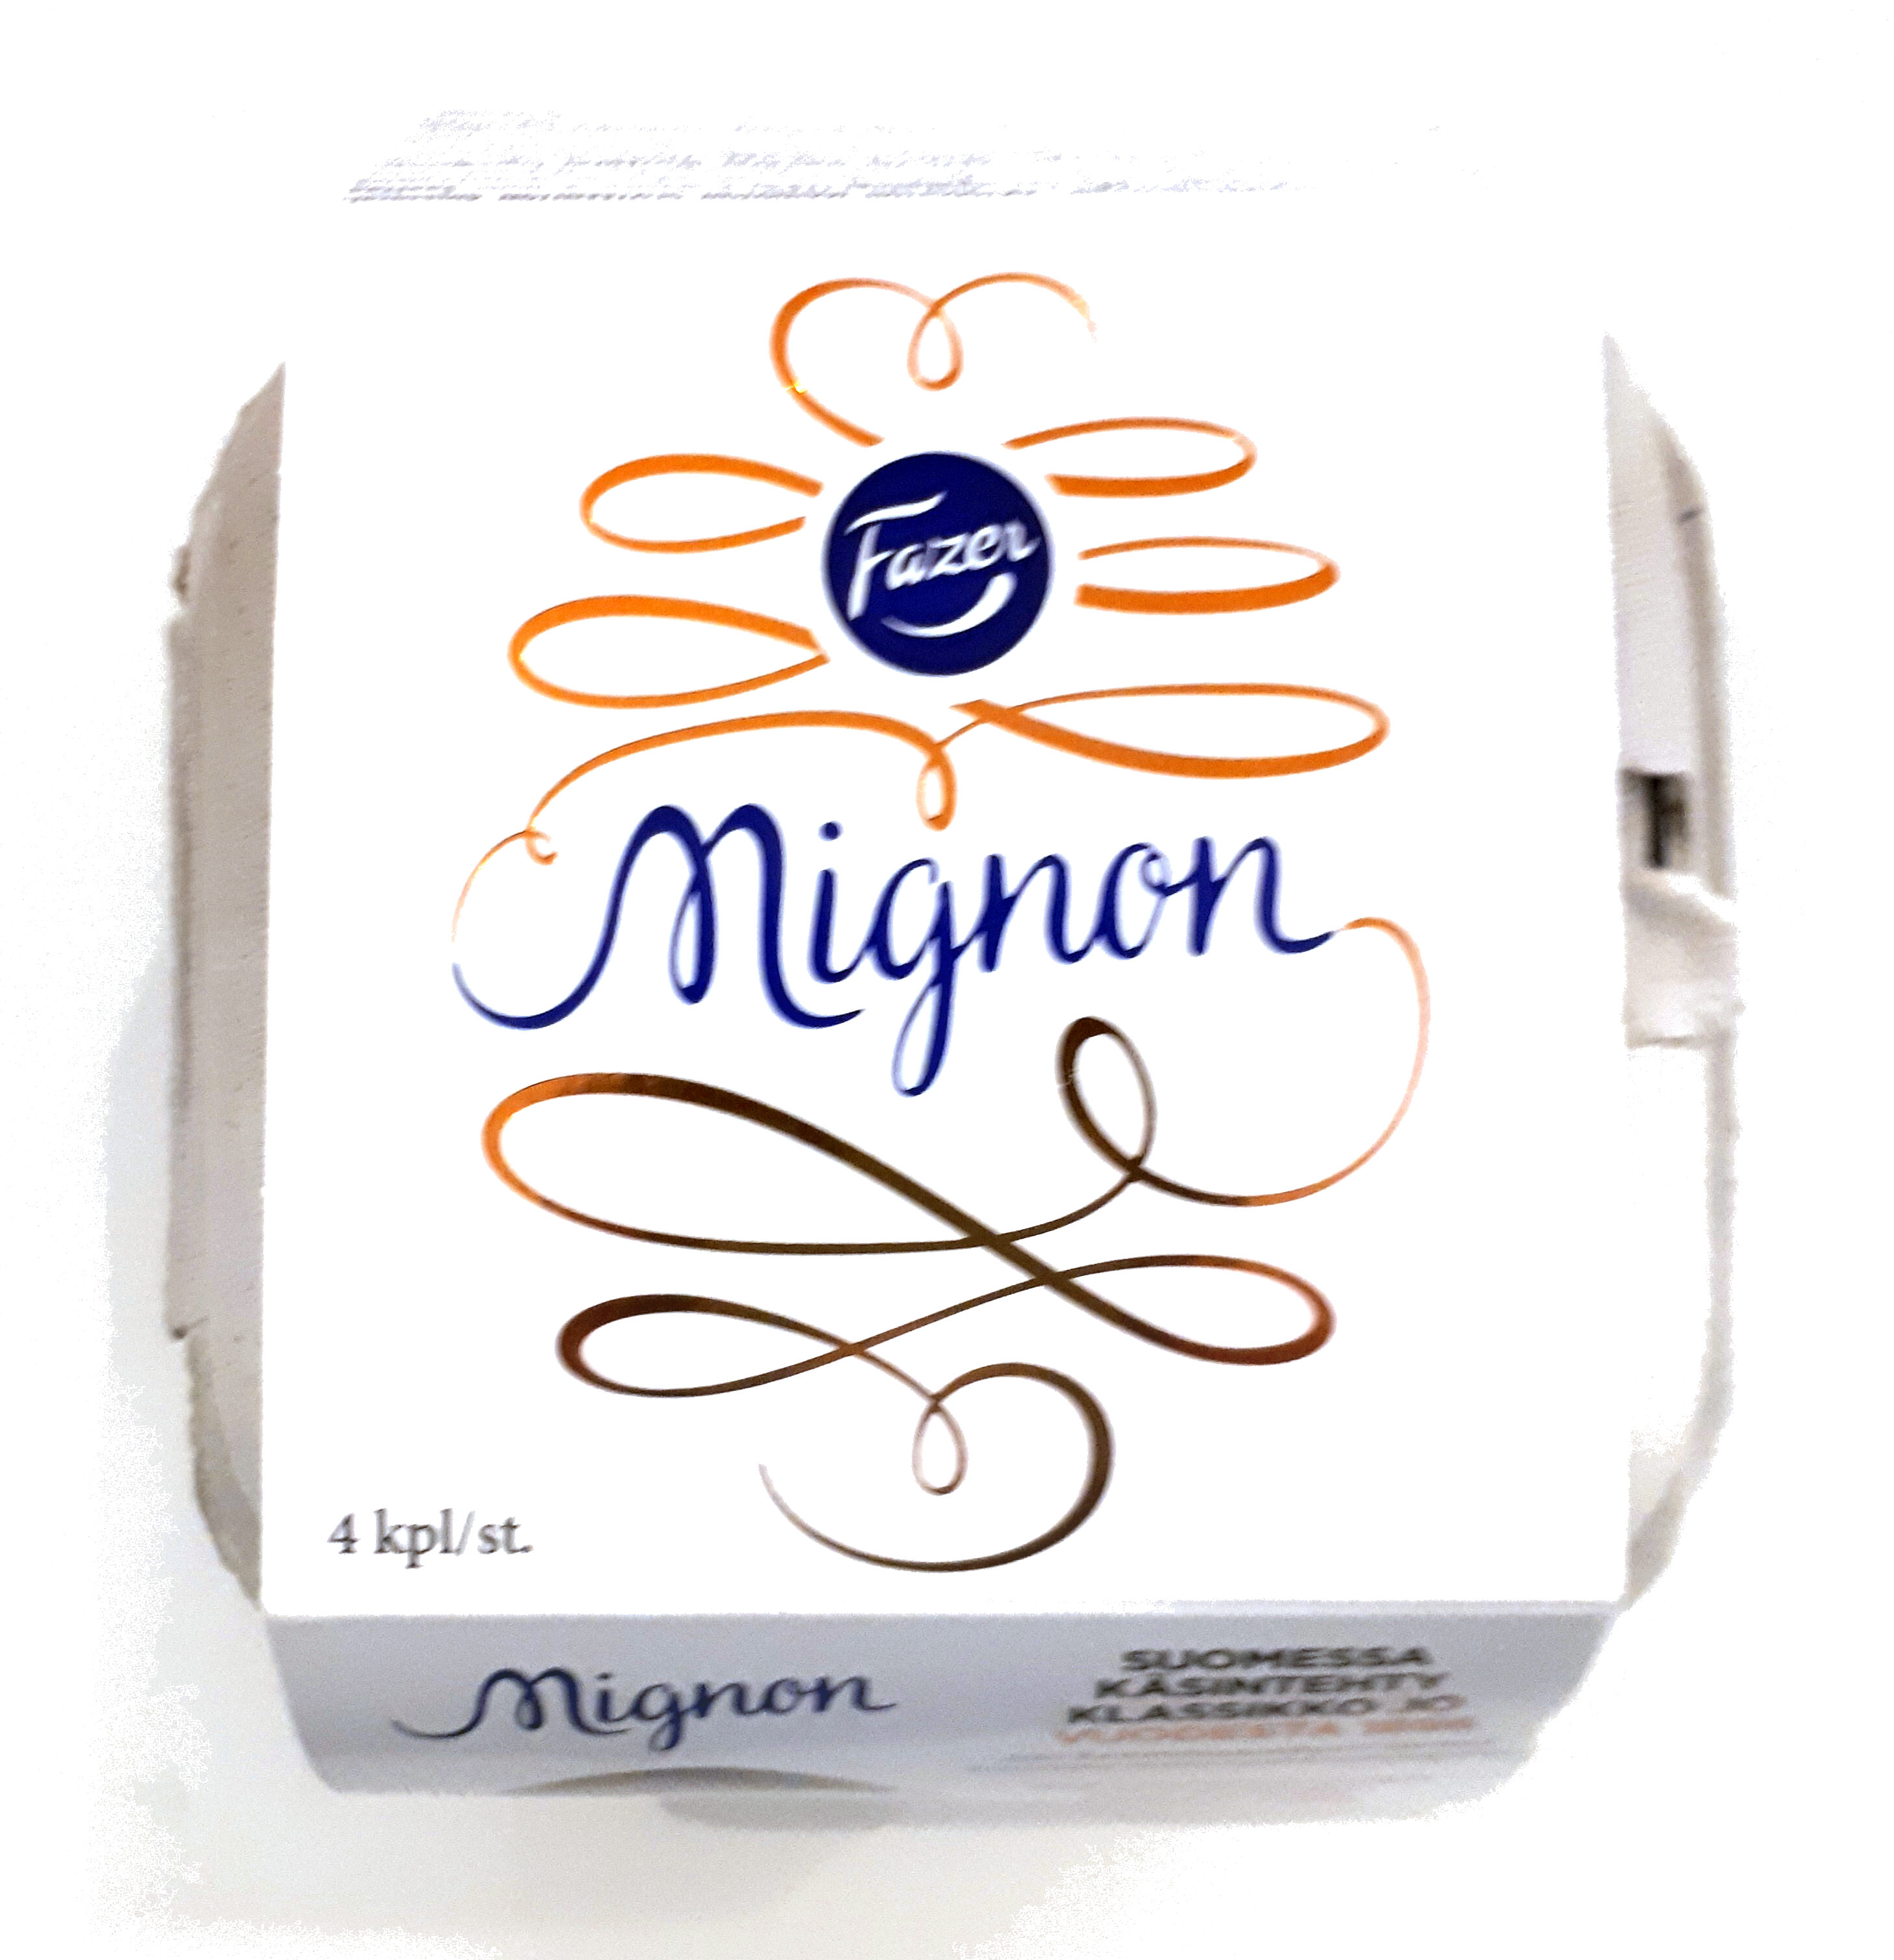 Mignon - Tuote - fi